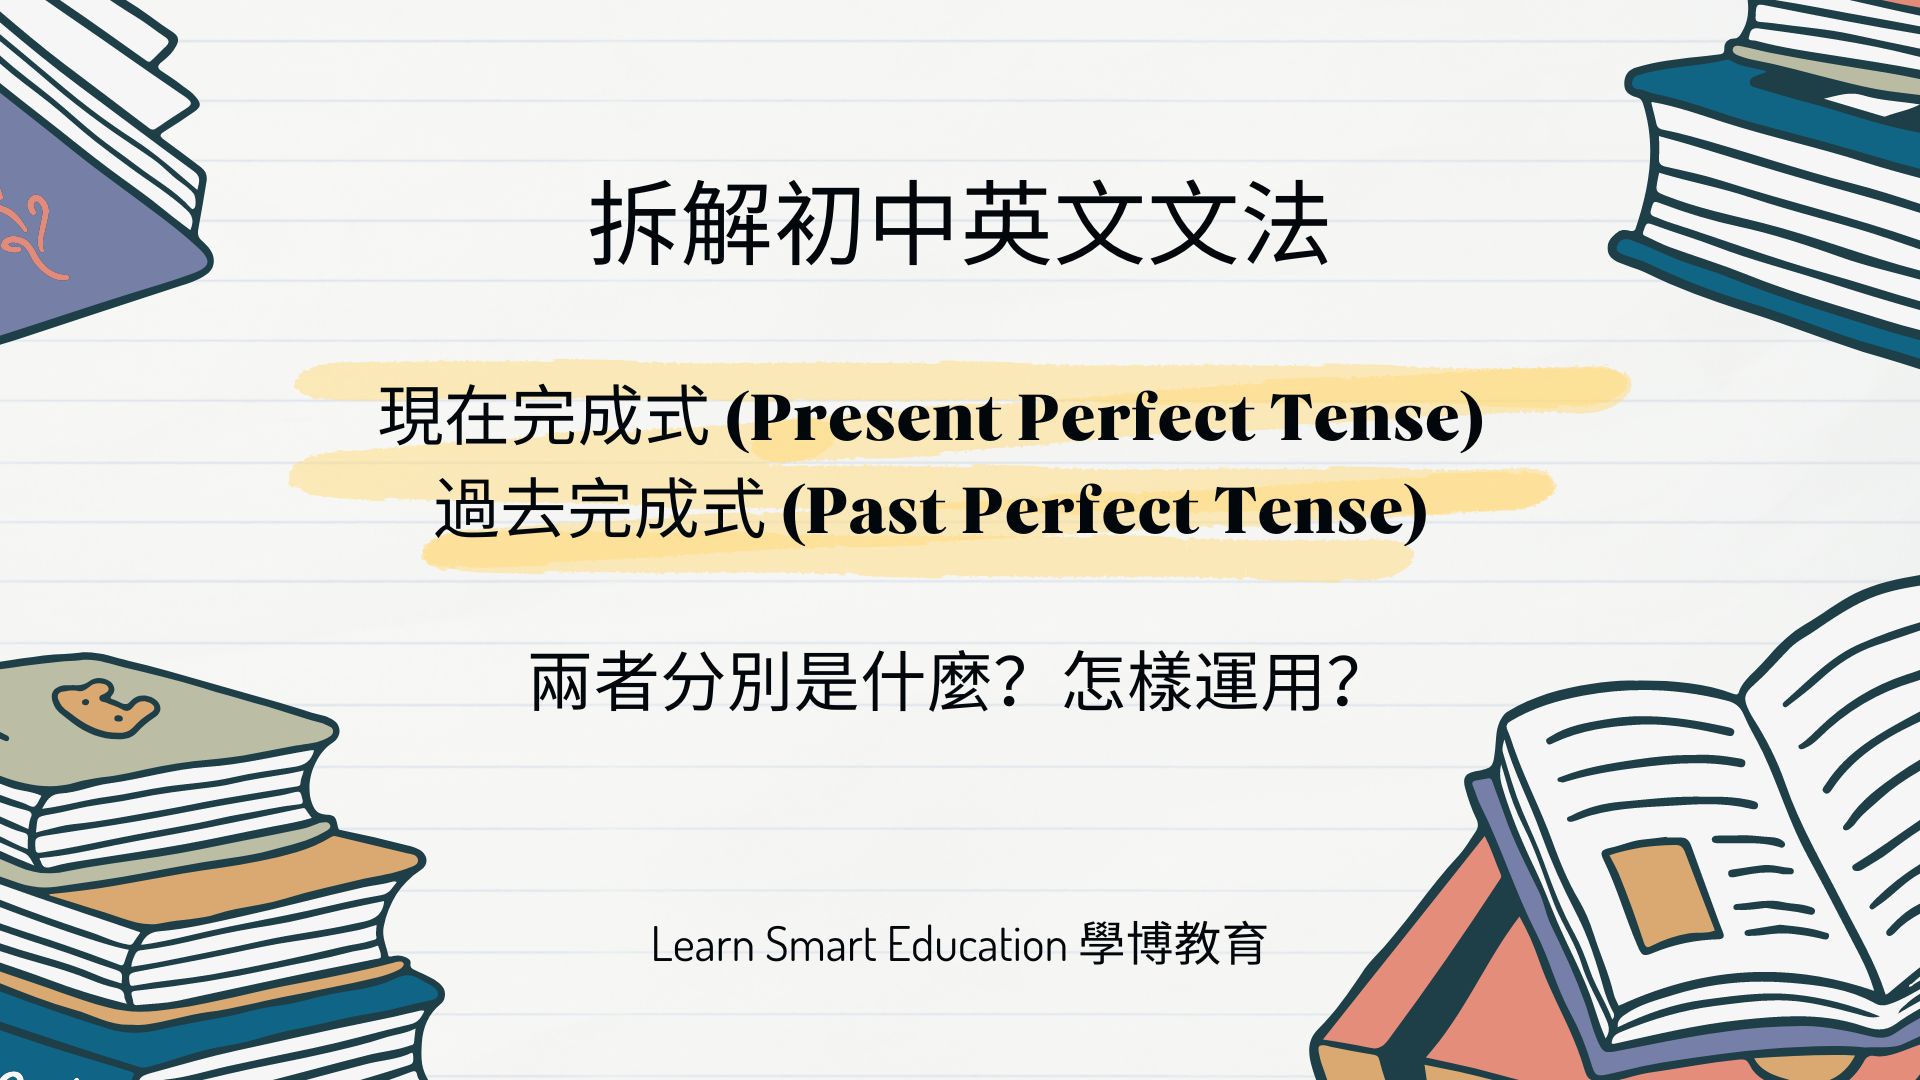 【初中英文】Present Perfect Tense, Past Perfect Tense 用法撈到亂曬？一文睇曬初中英文文法重點！